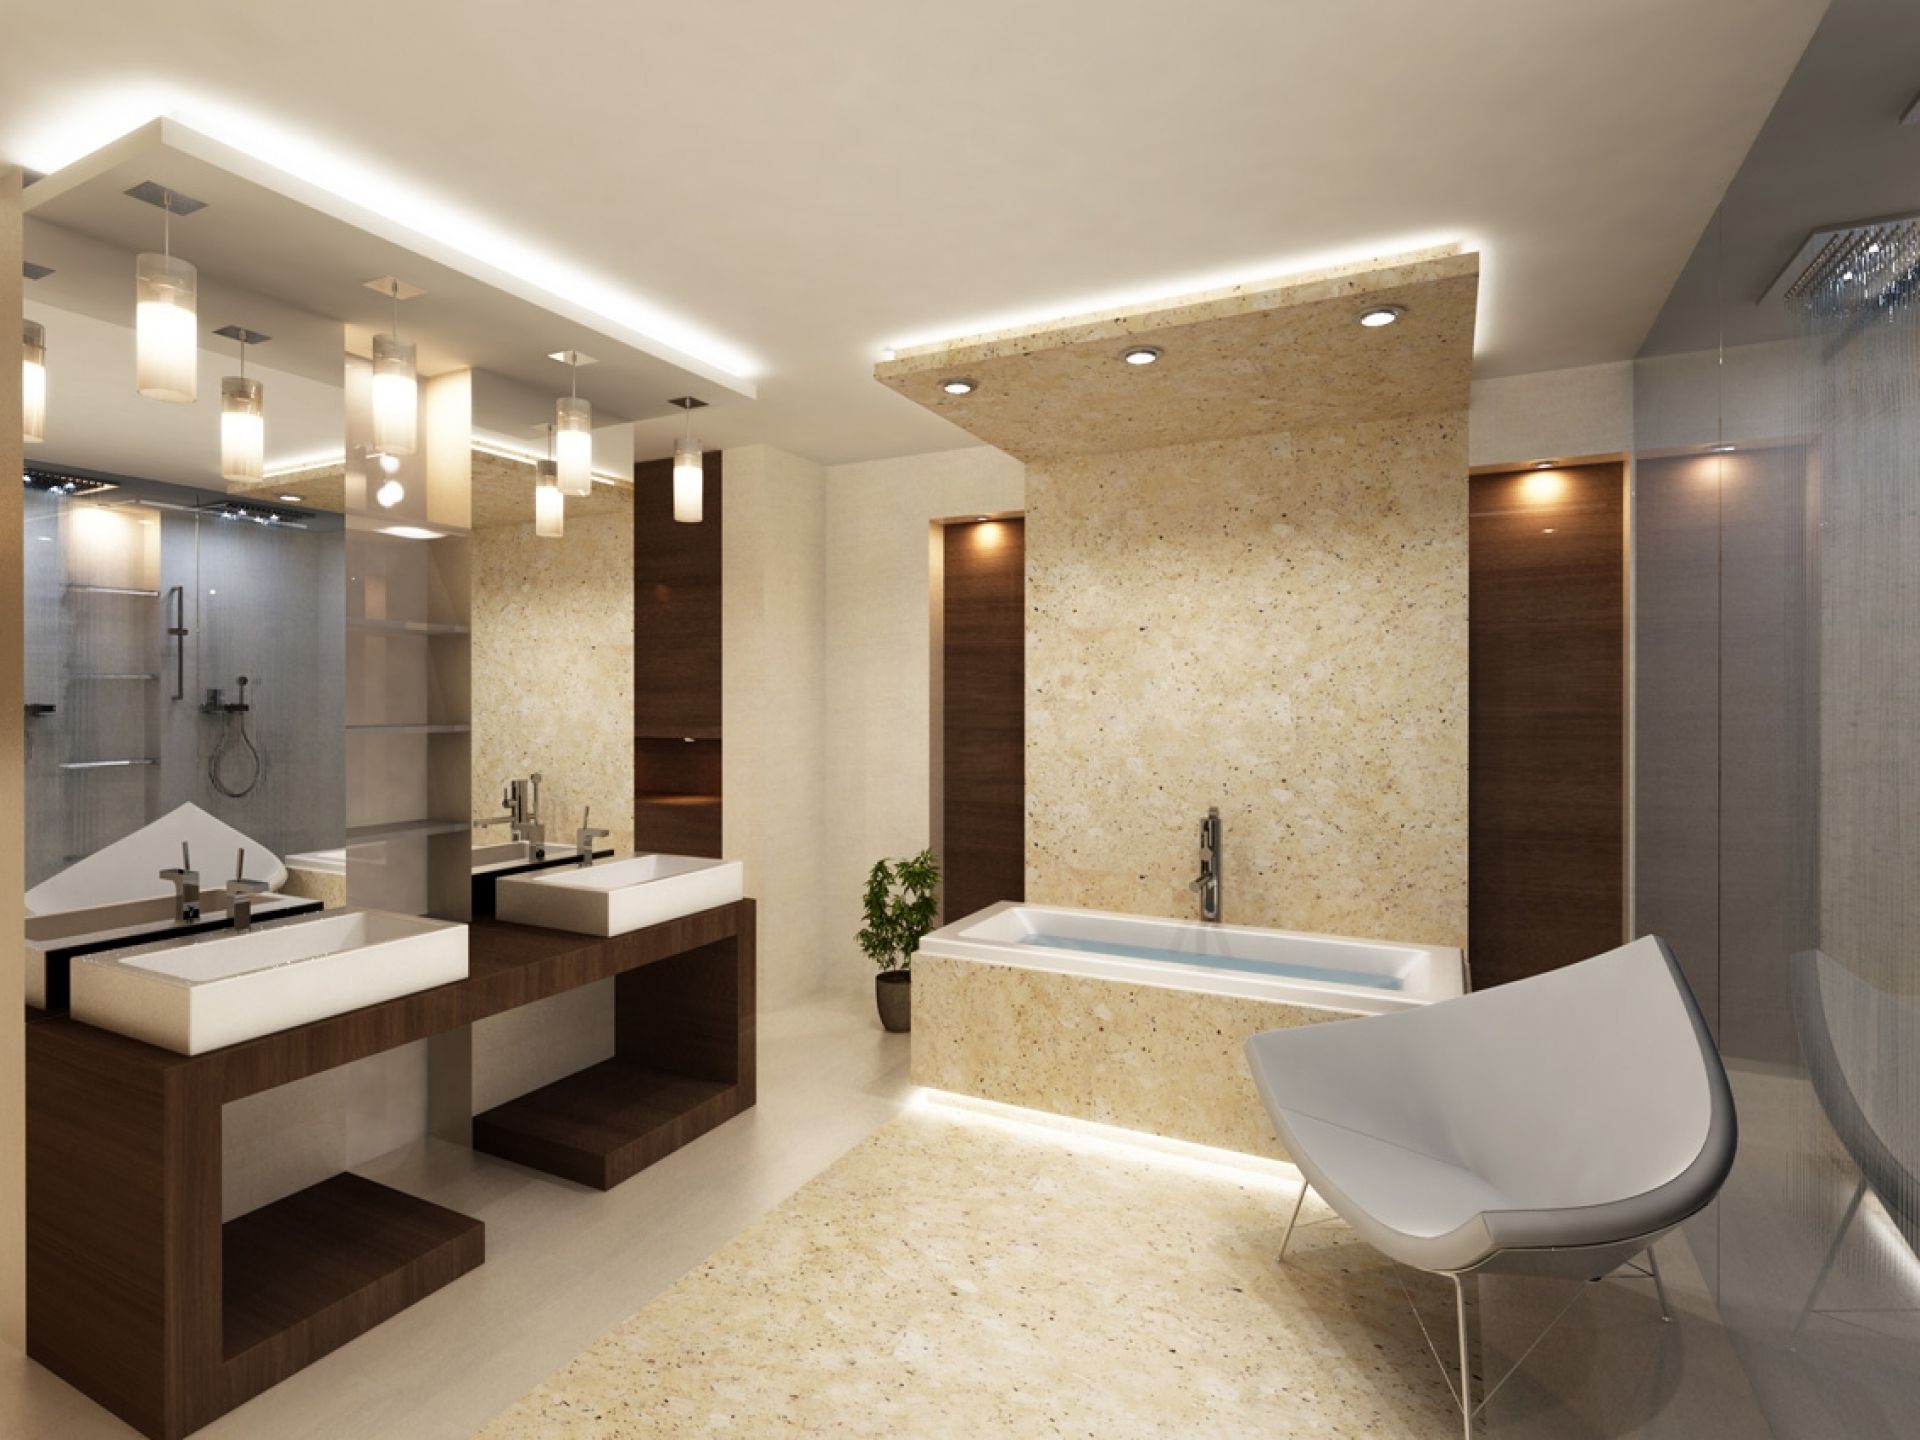 Освещение в ванной комнате с натяжным потолком: полный расчет.